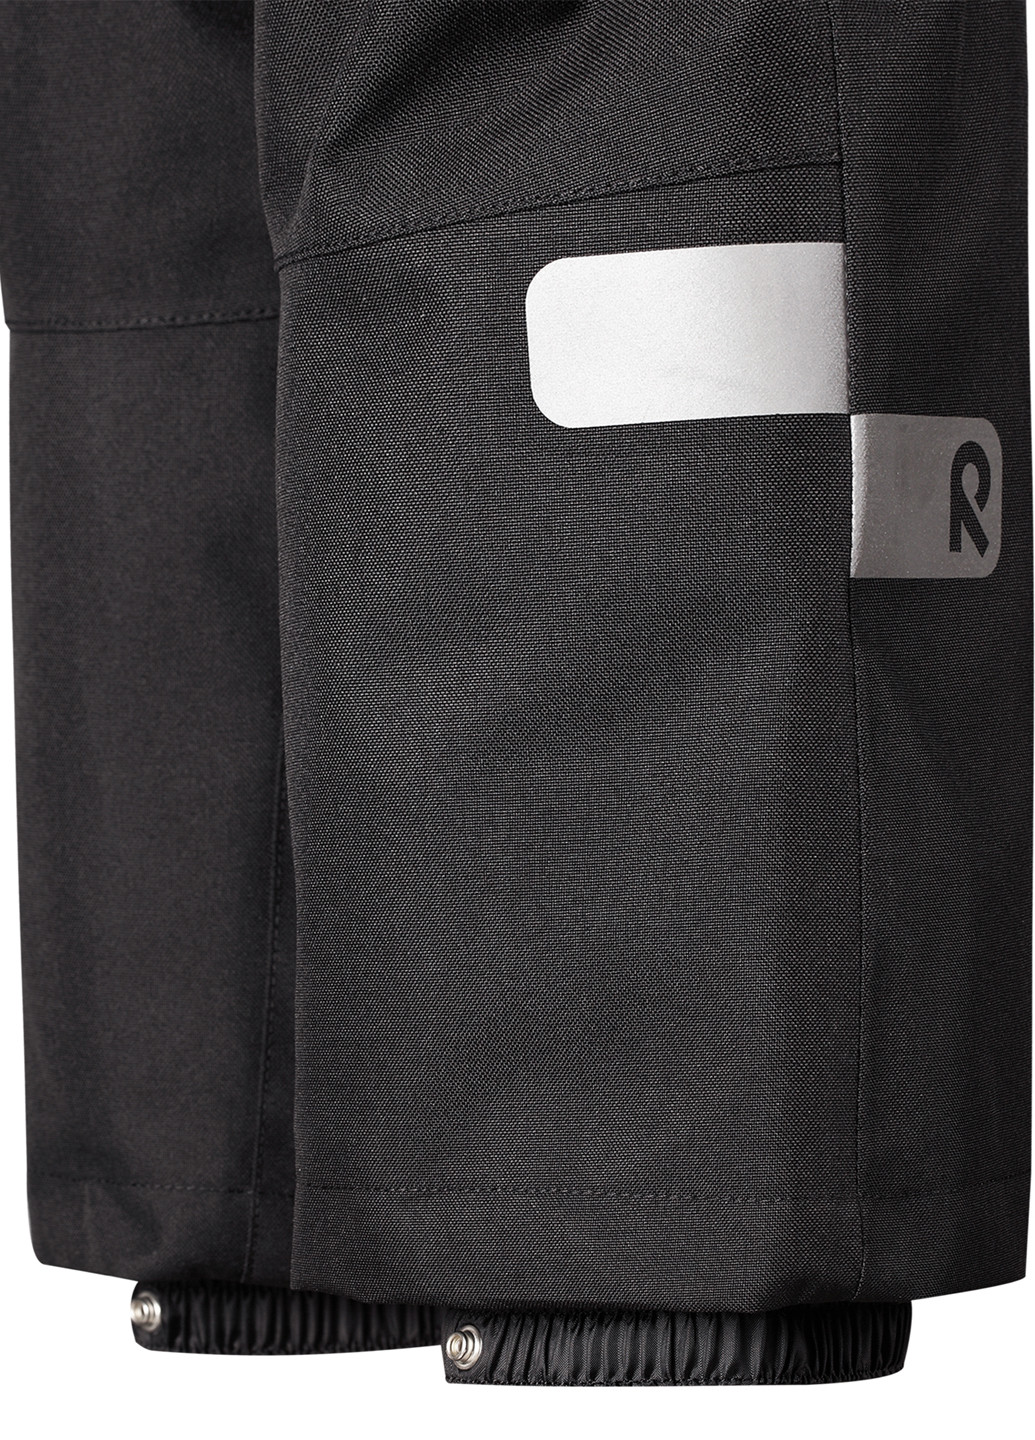 Чорний зимній комплект (куртка, штани) Reima